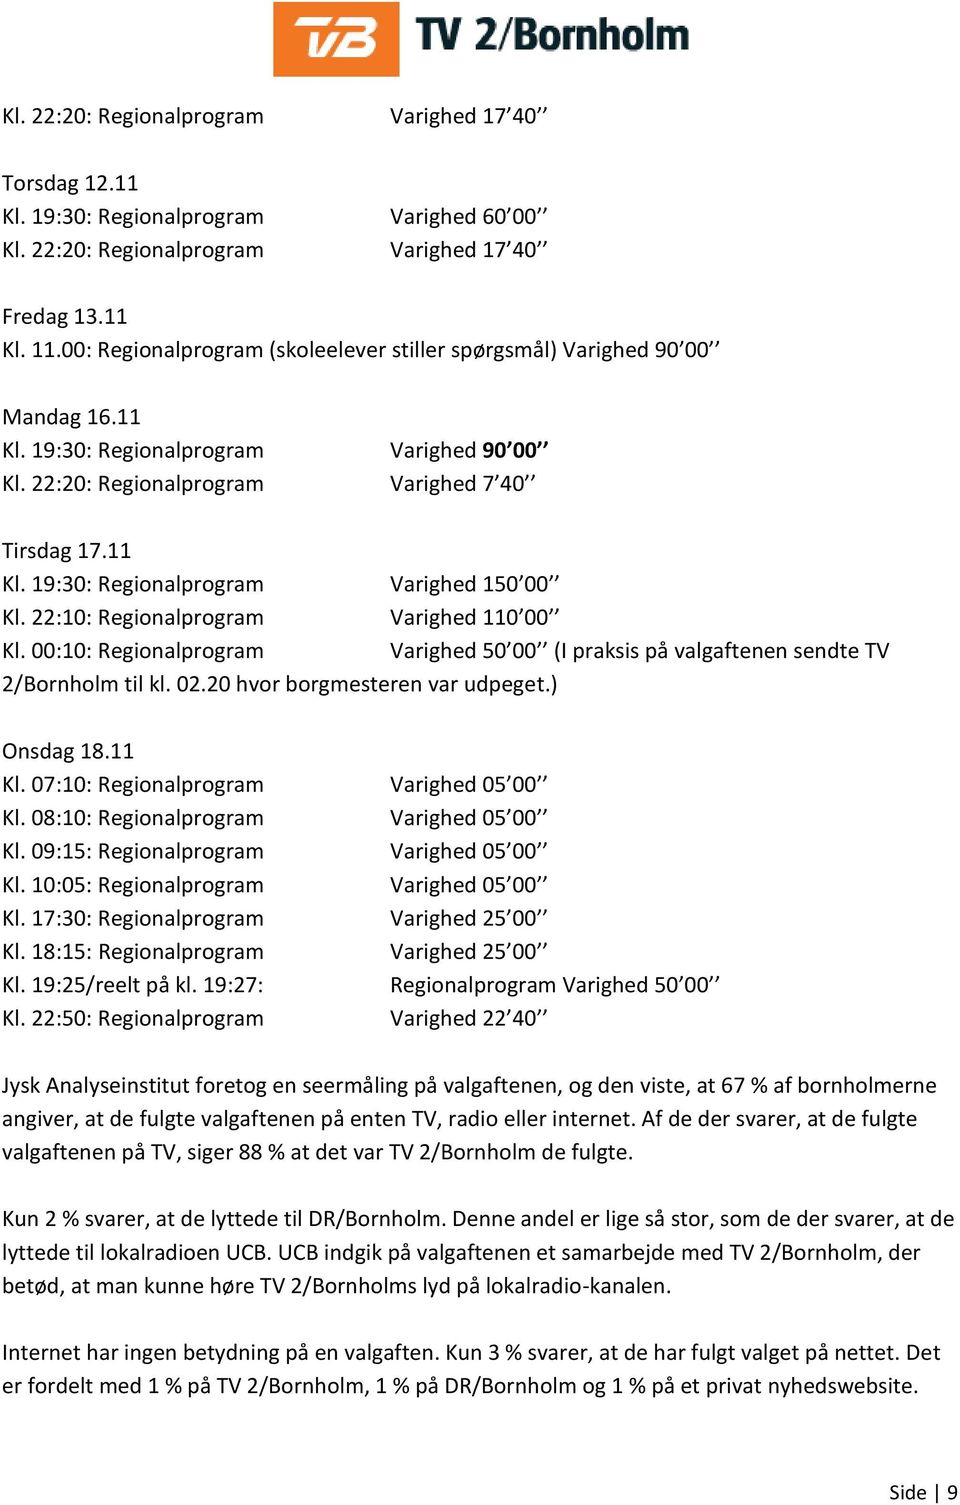 22:10: Regionalprogram Varighed 110 00 Kl. 00:10: Regionalprogram Varighed 50 00 (I praksis på valgaftenen sendte TV 2/Bornholm til kl. 02.20 hvor borgmesteren var udpeget.) Onsdag 18.11 Kl.